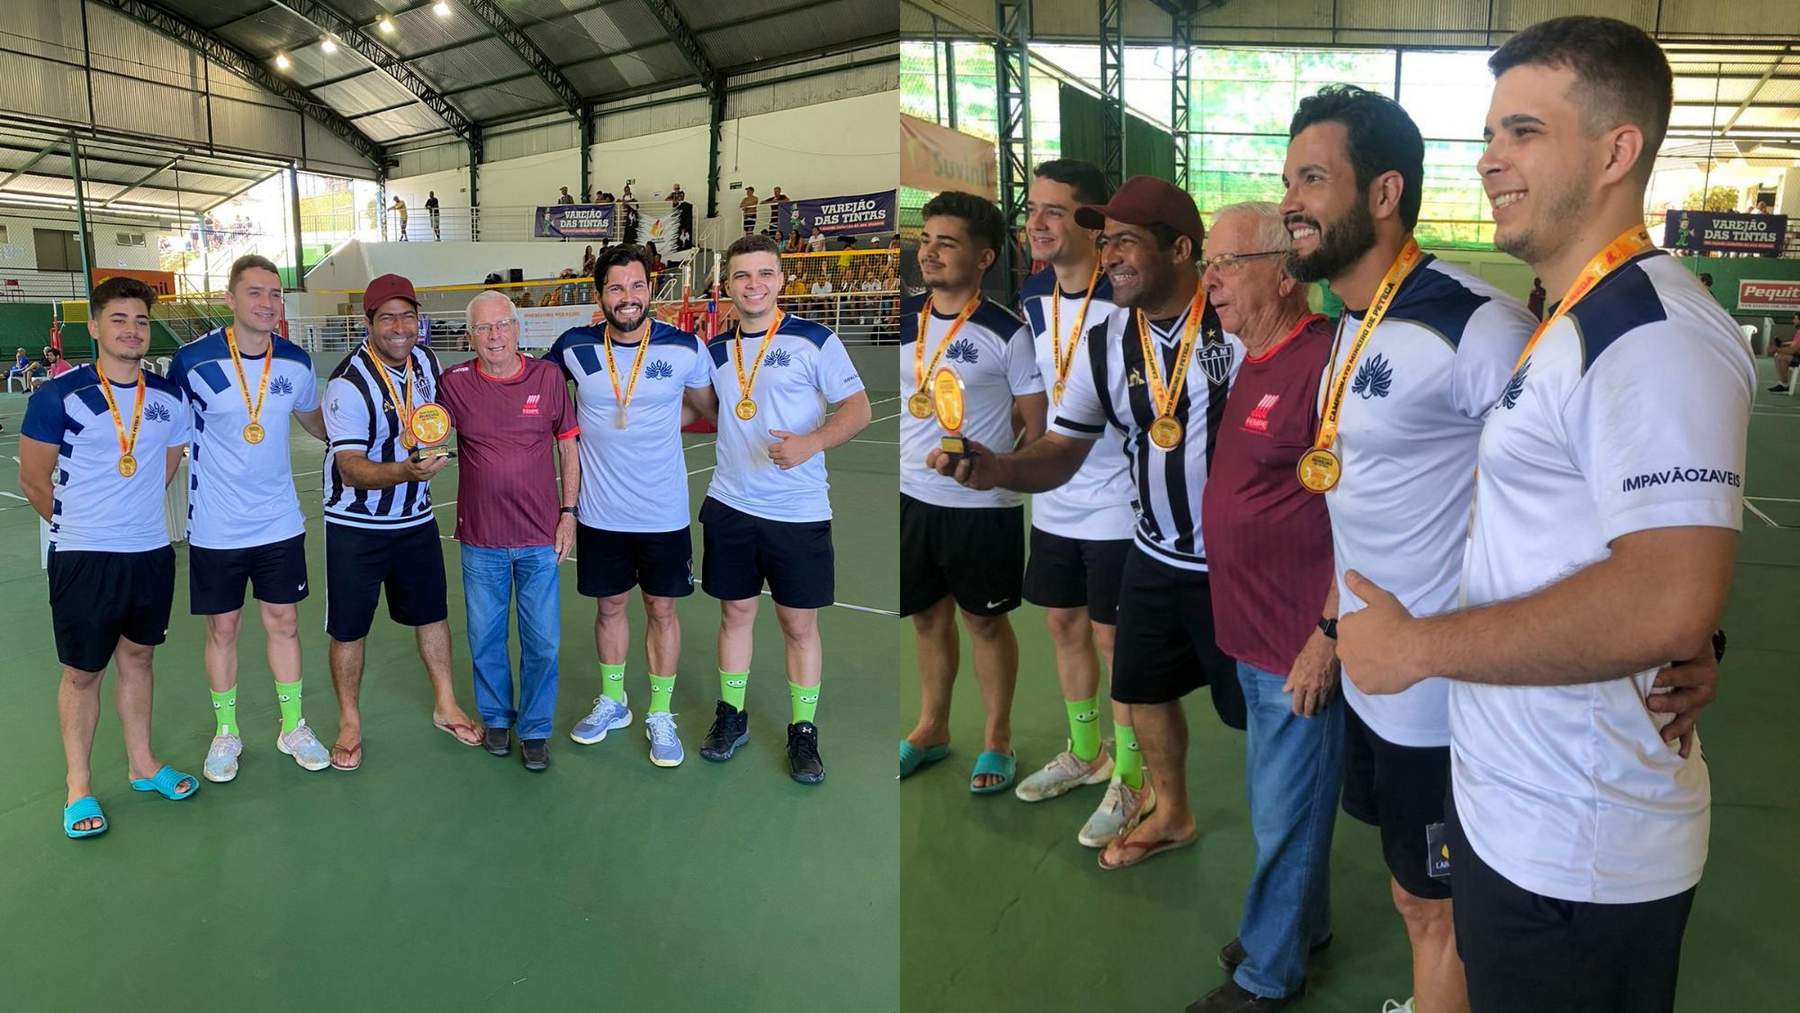 Impavãozáveis de Manhuaçu conquista medalhas no Campeonato Mineiro de Peteca